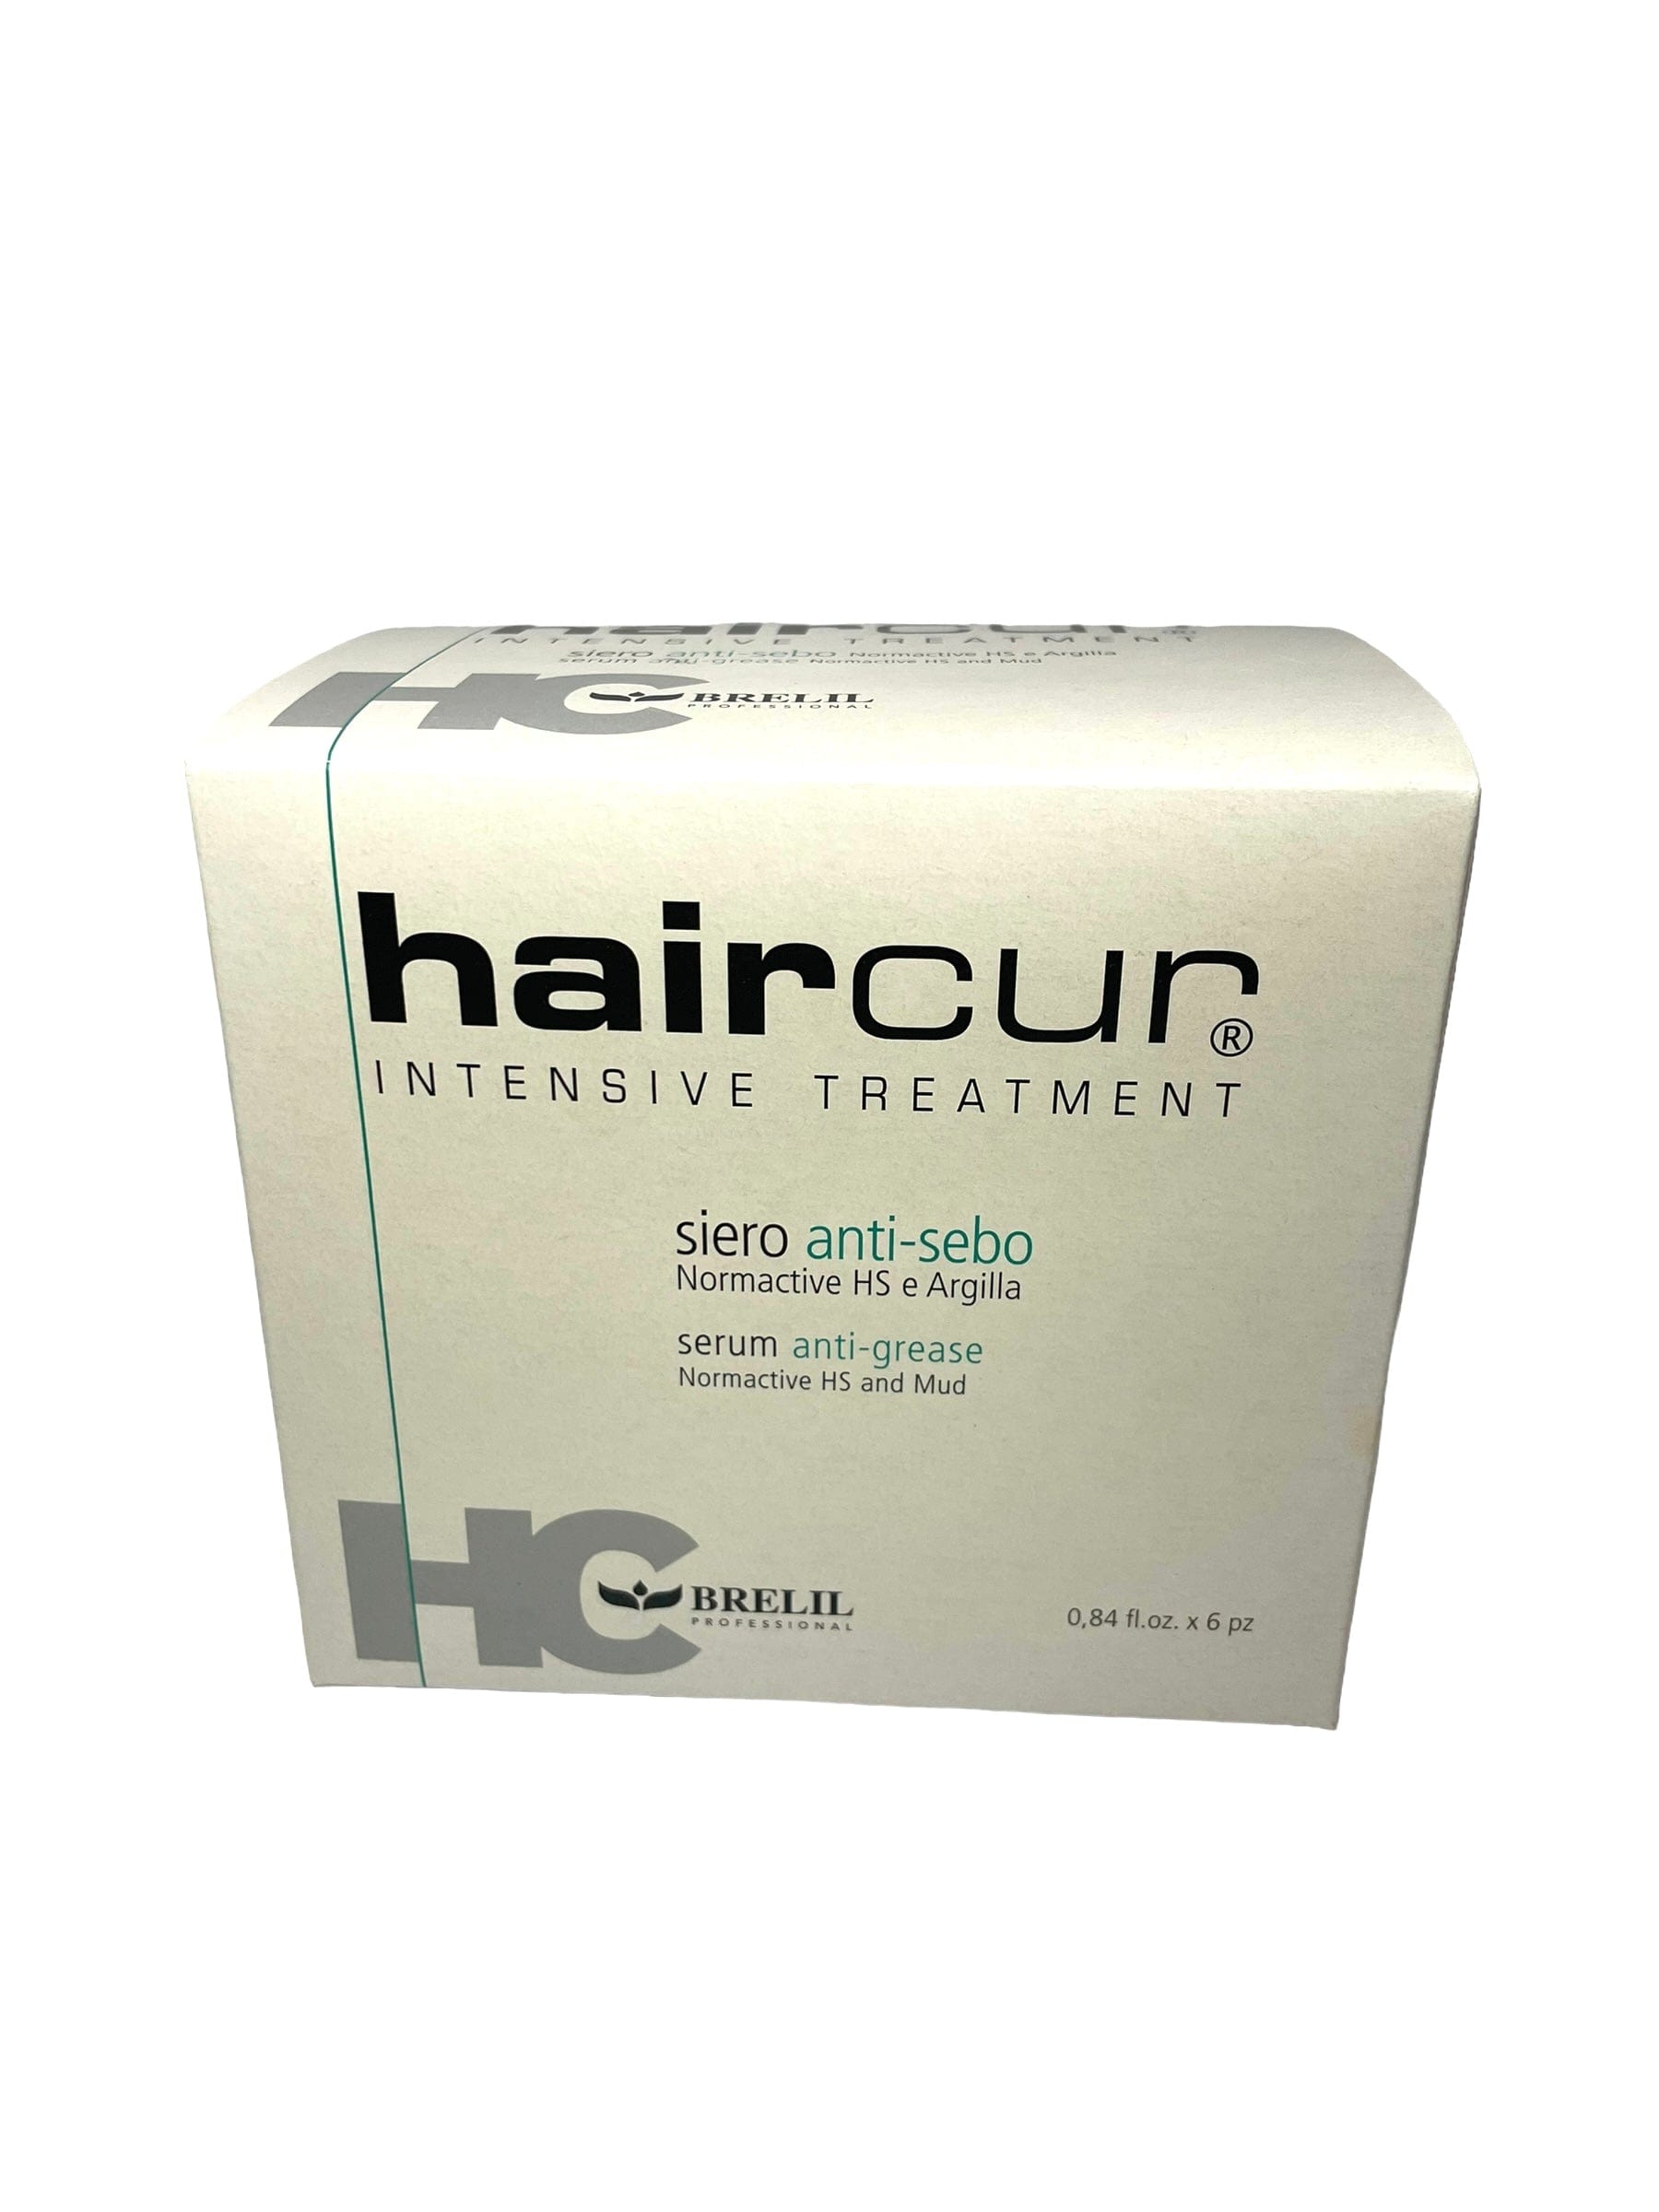 Anti Oily Hair & Scalp Intensive Hair Cur Anti Sebo Serum Treatment 6pc Hair Care